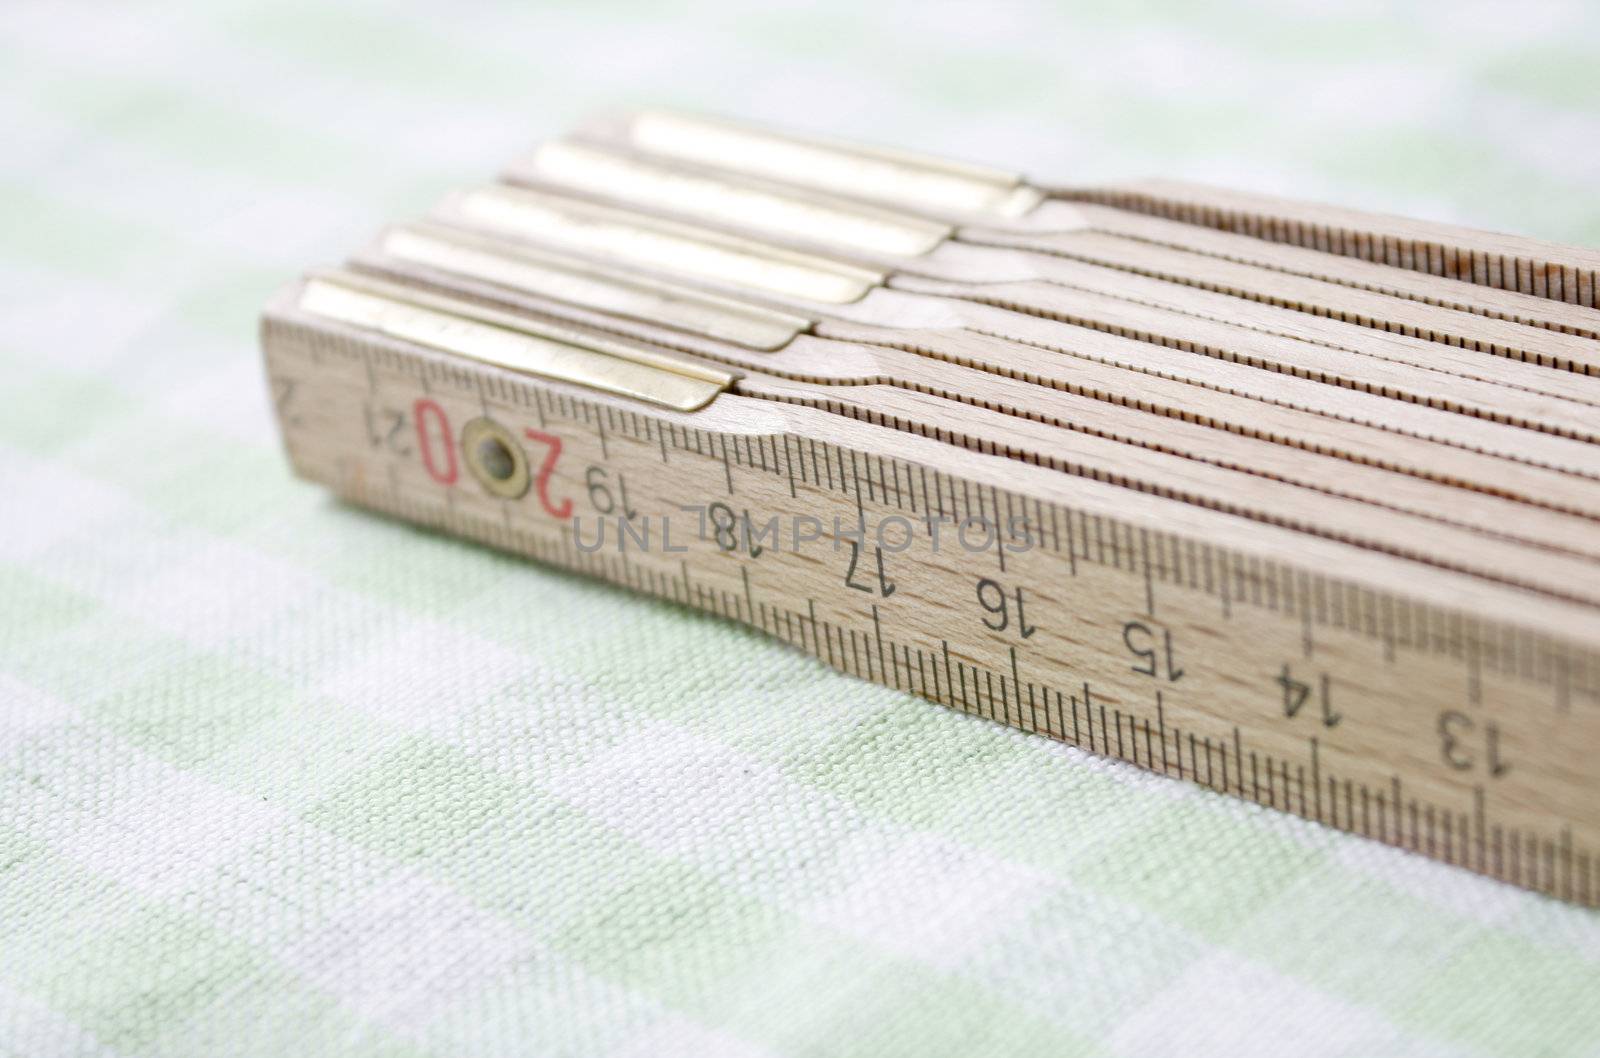 A wooden ruler